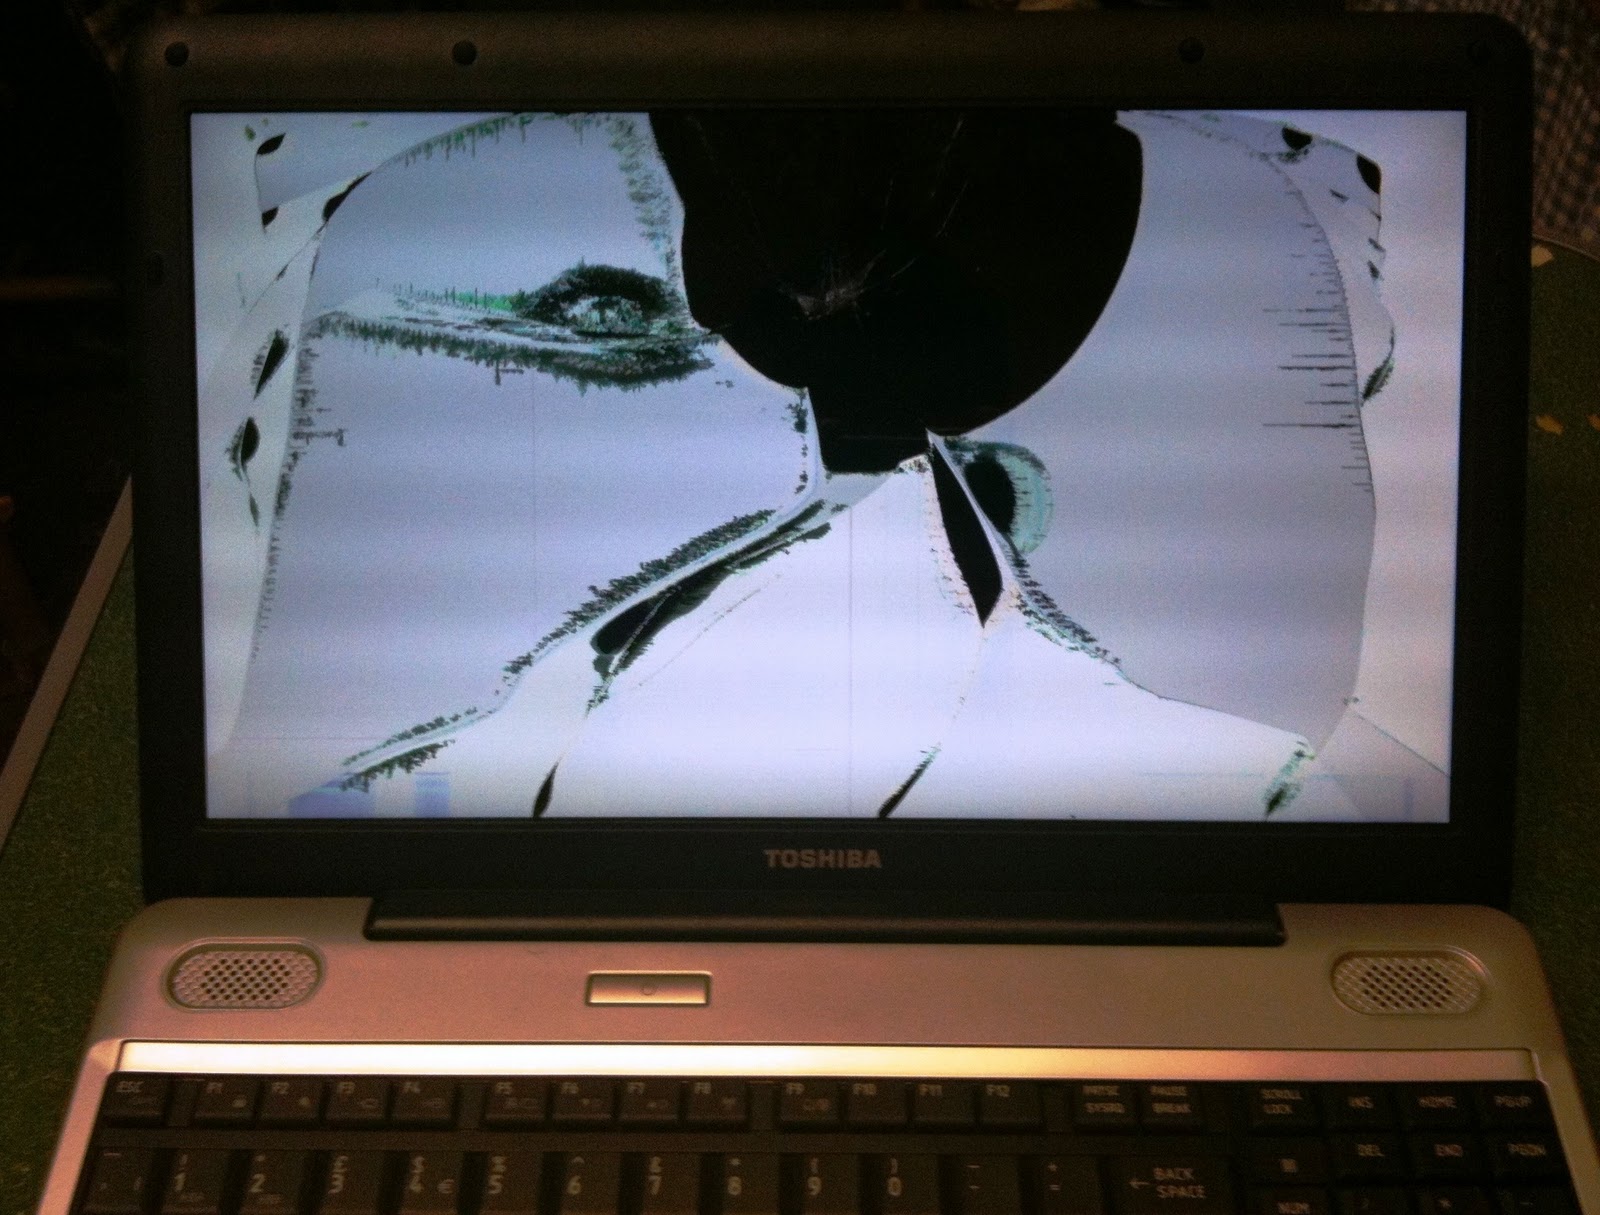 Сдвинут экран ноутбука. Ноутбук с треснутым экраном. Разбитый ноутбук. Дисплей ноутбука. Разбитый экран ноутбука.